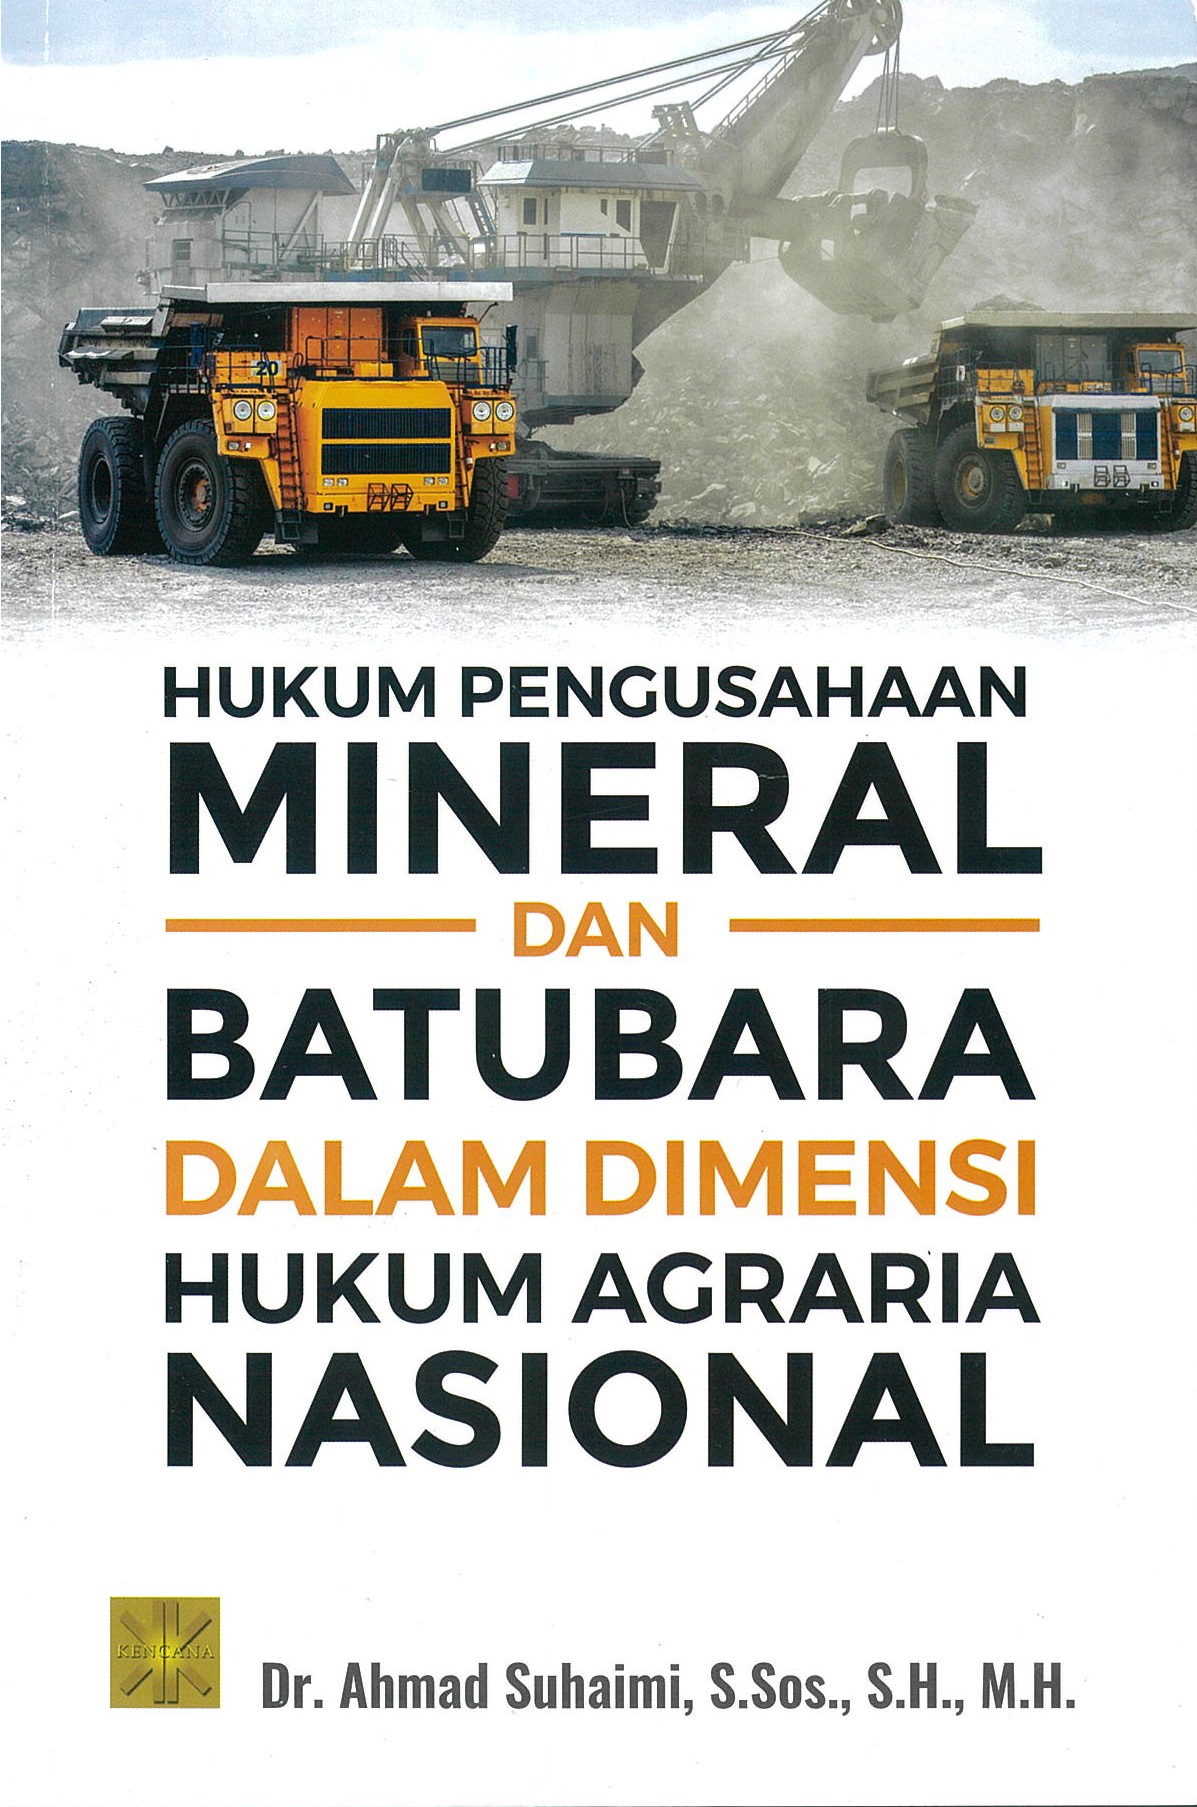 Hukum pengusahaan mineral dan batubara dalam dimensi hukum agraria nasional